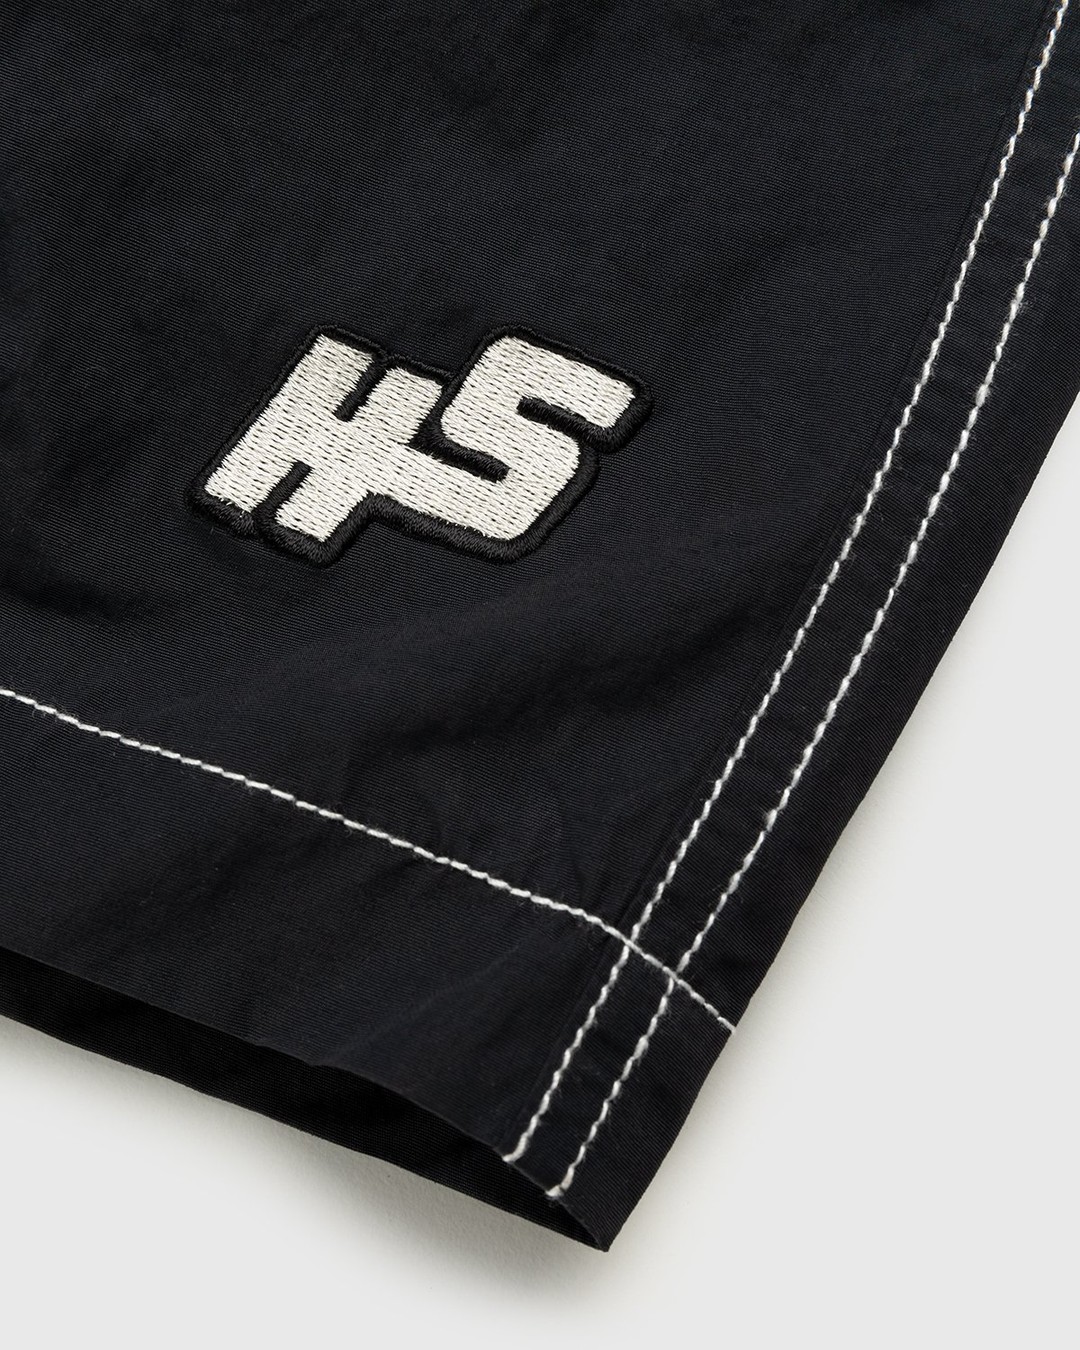 Highsnobiety – Contrast Brushed Nylon Water Shorts Black - Active Shorts - Black - Image 5